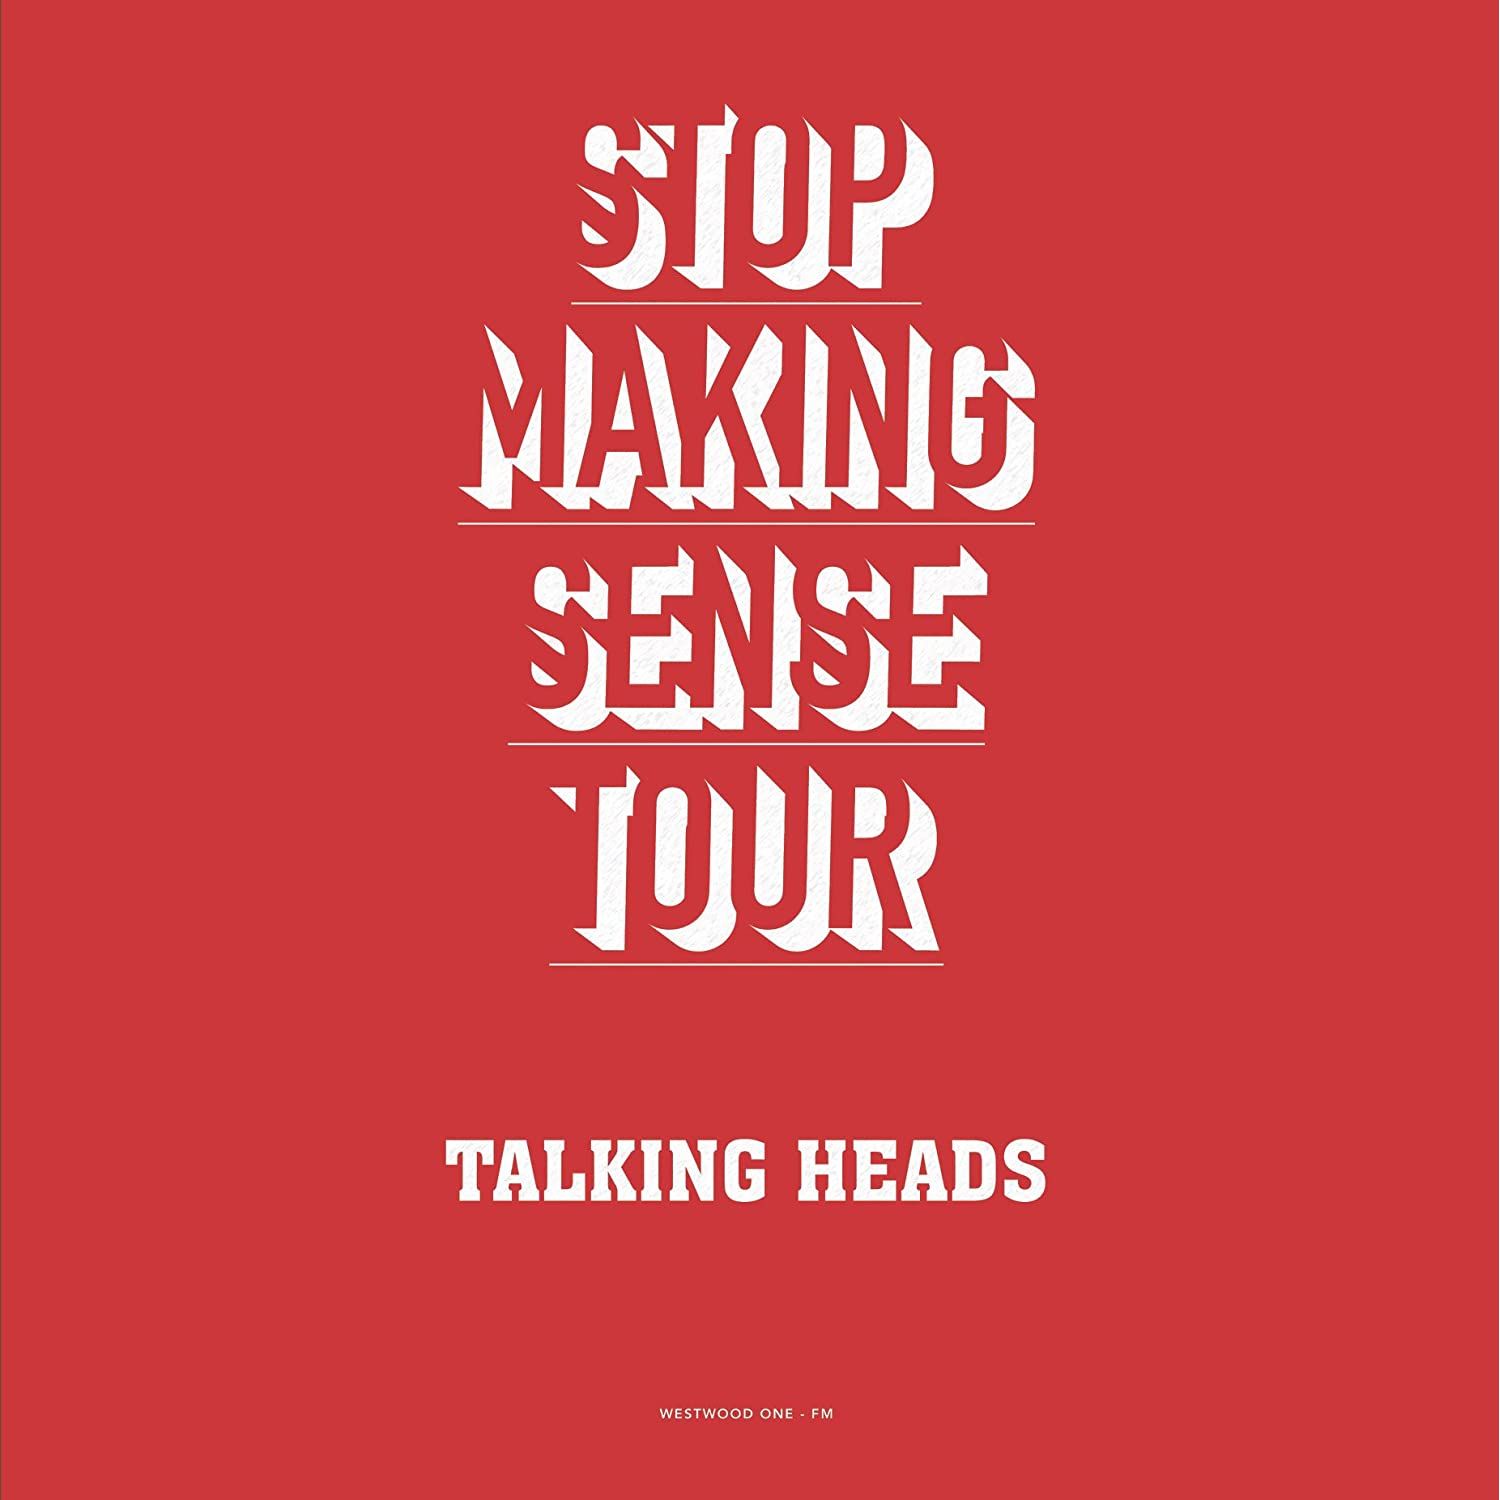 STOP MAKING SENSE TOUR - 2 LP (RED VINYL)